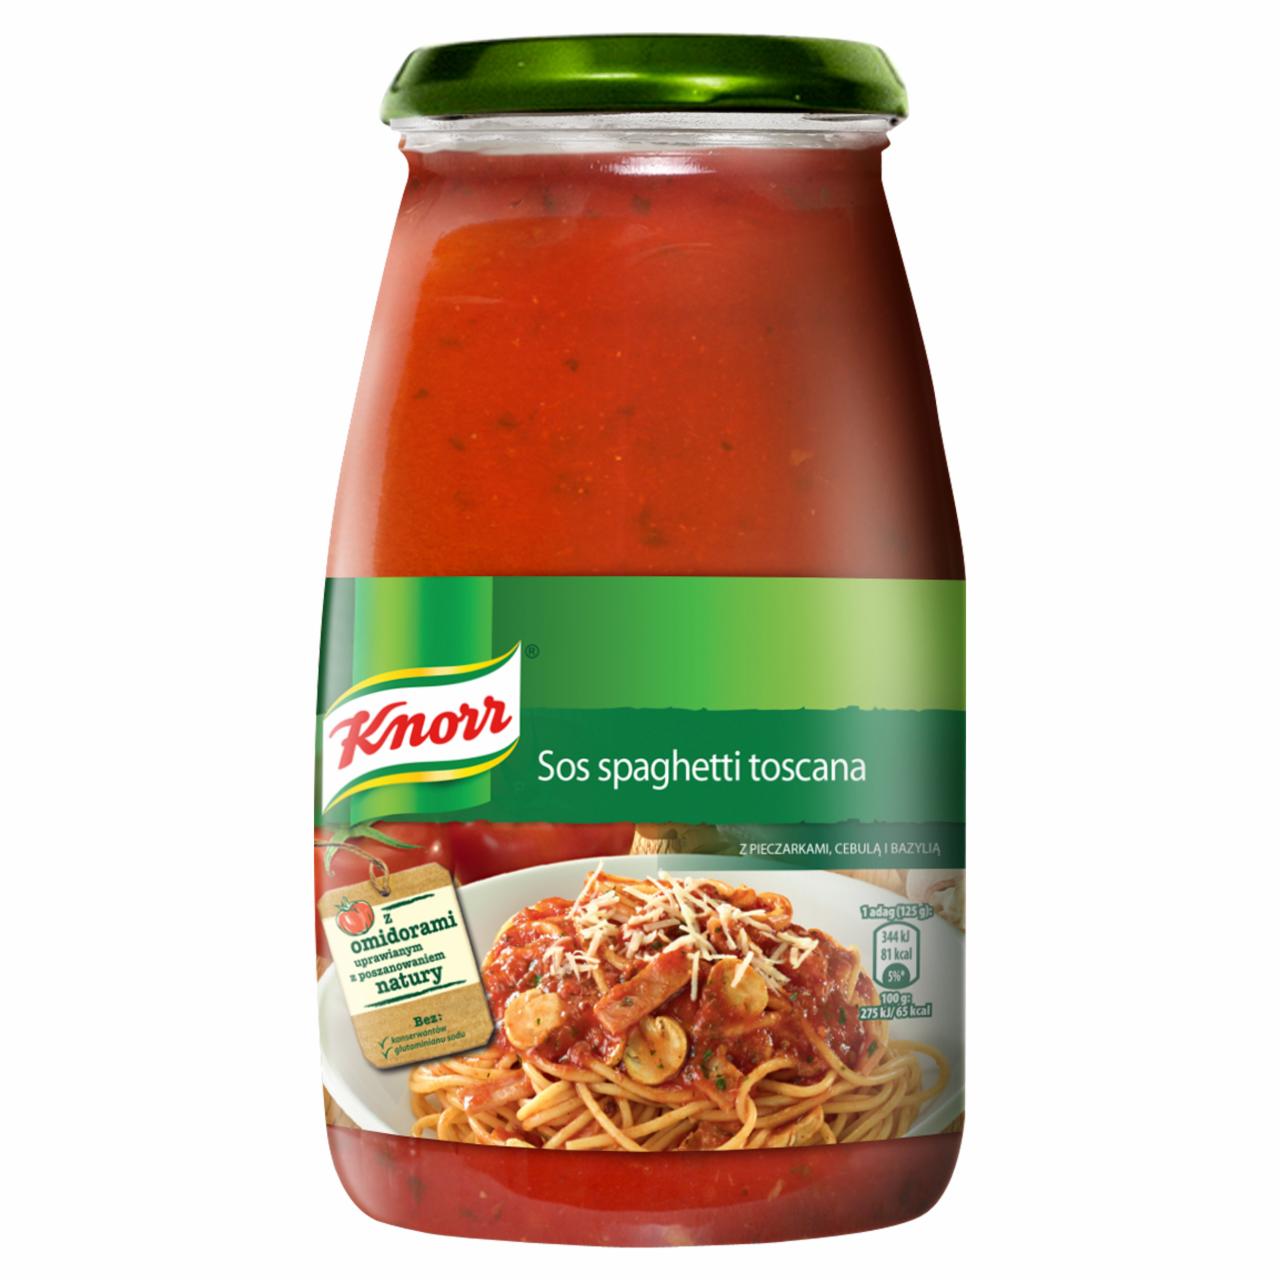 Zdjęcia - Knorr Sos spaghetti toscana z pieczarkami cebulą i bazylią 500 g